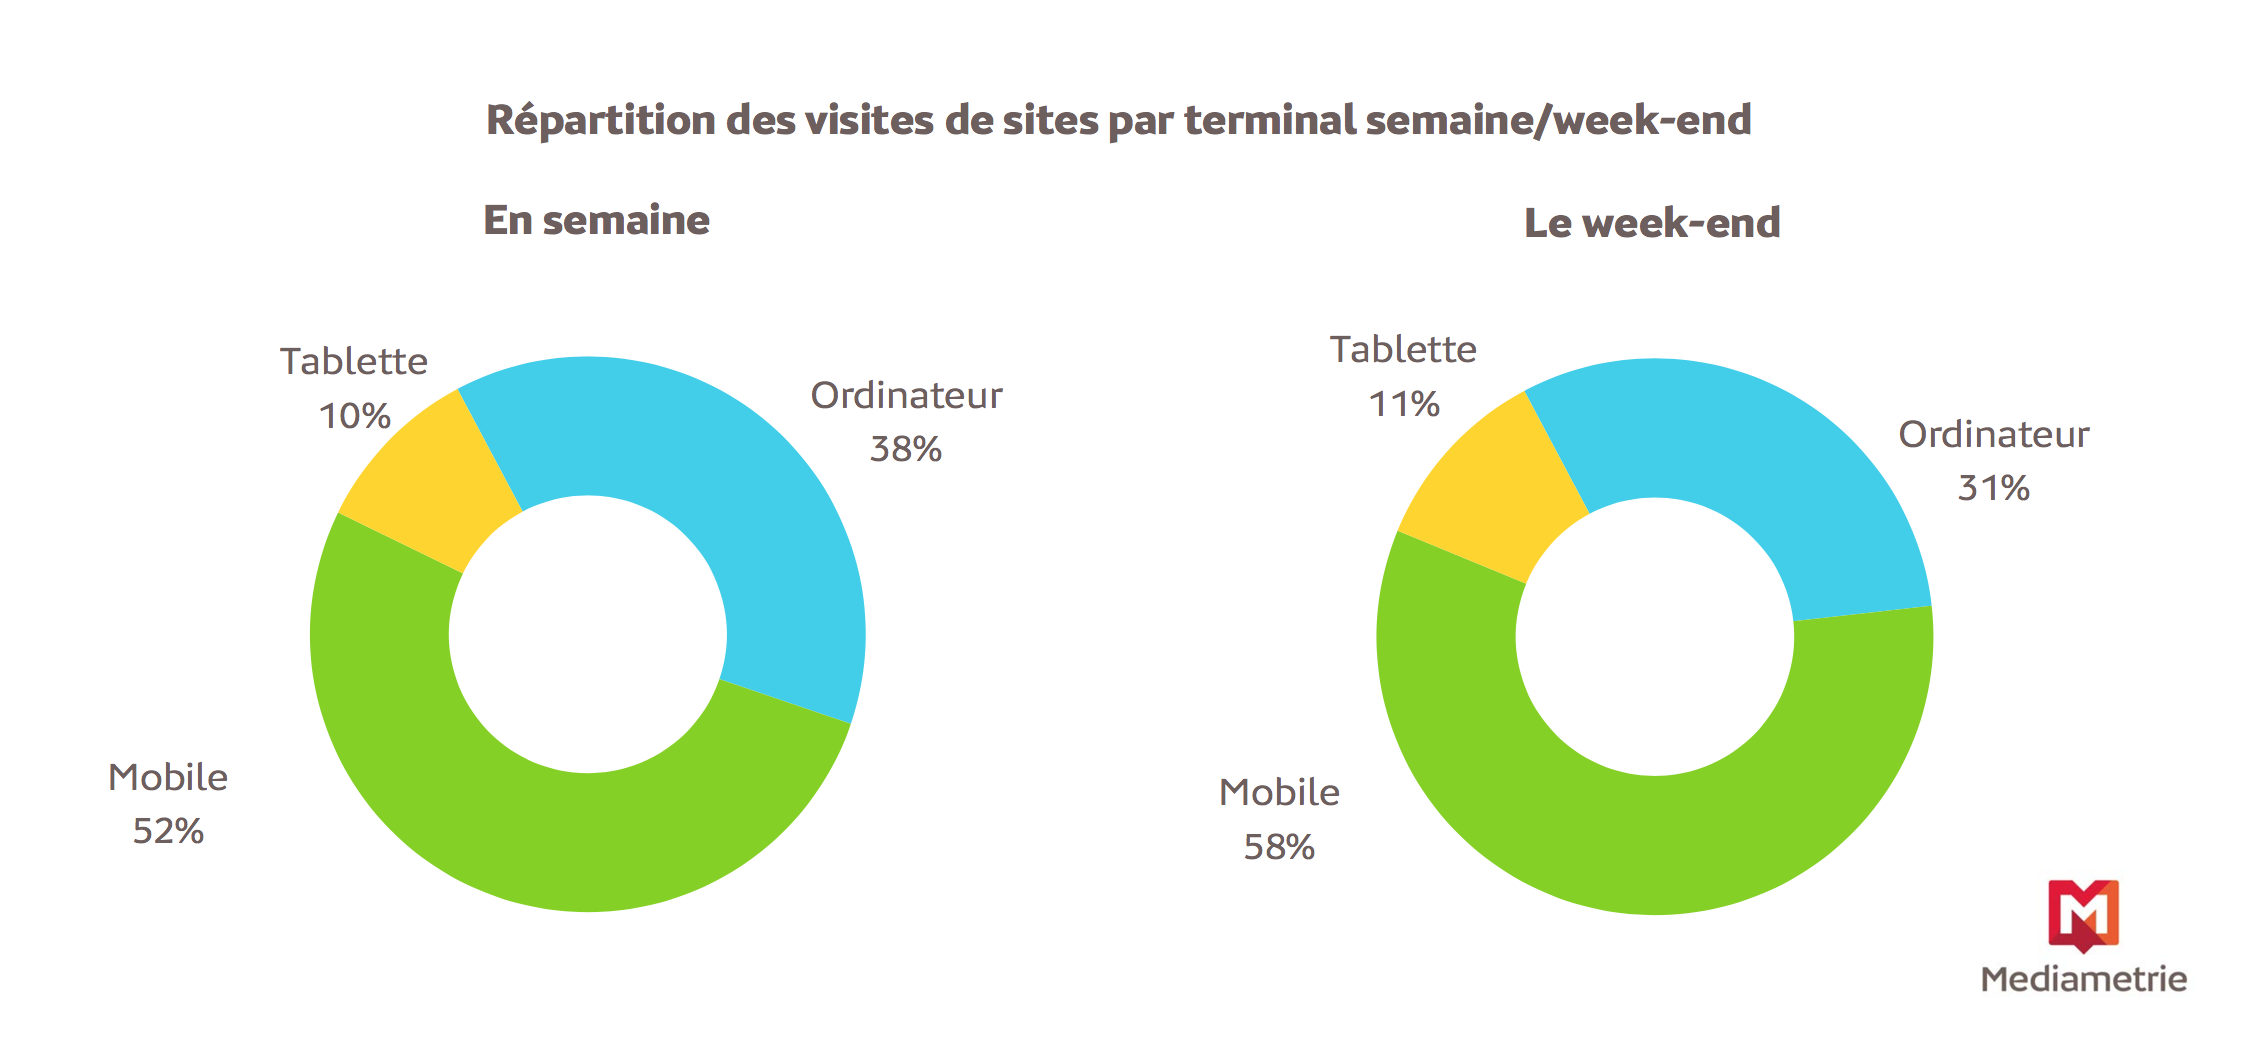 Près de deux tiers des visites des sites s'effectuent depuis un terminal mobile